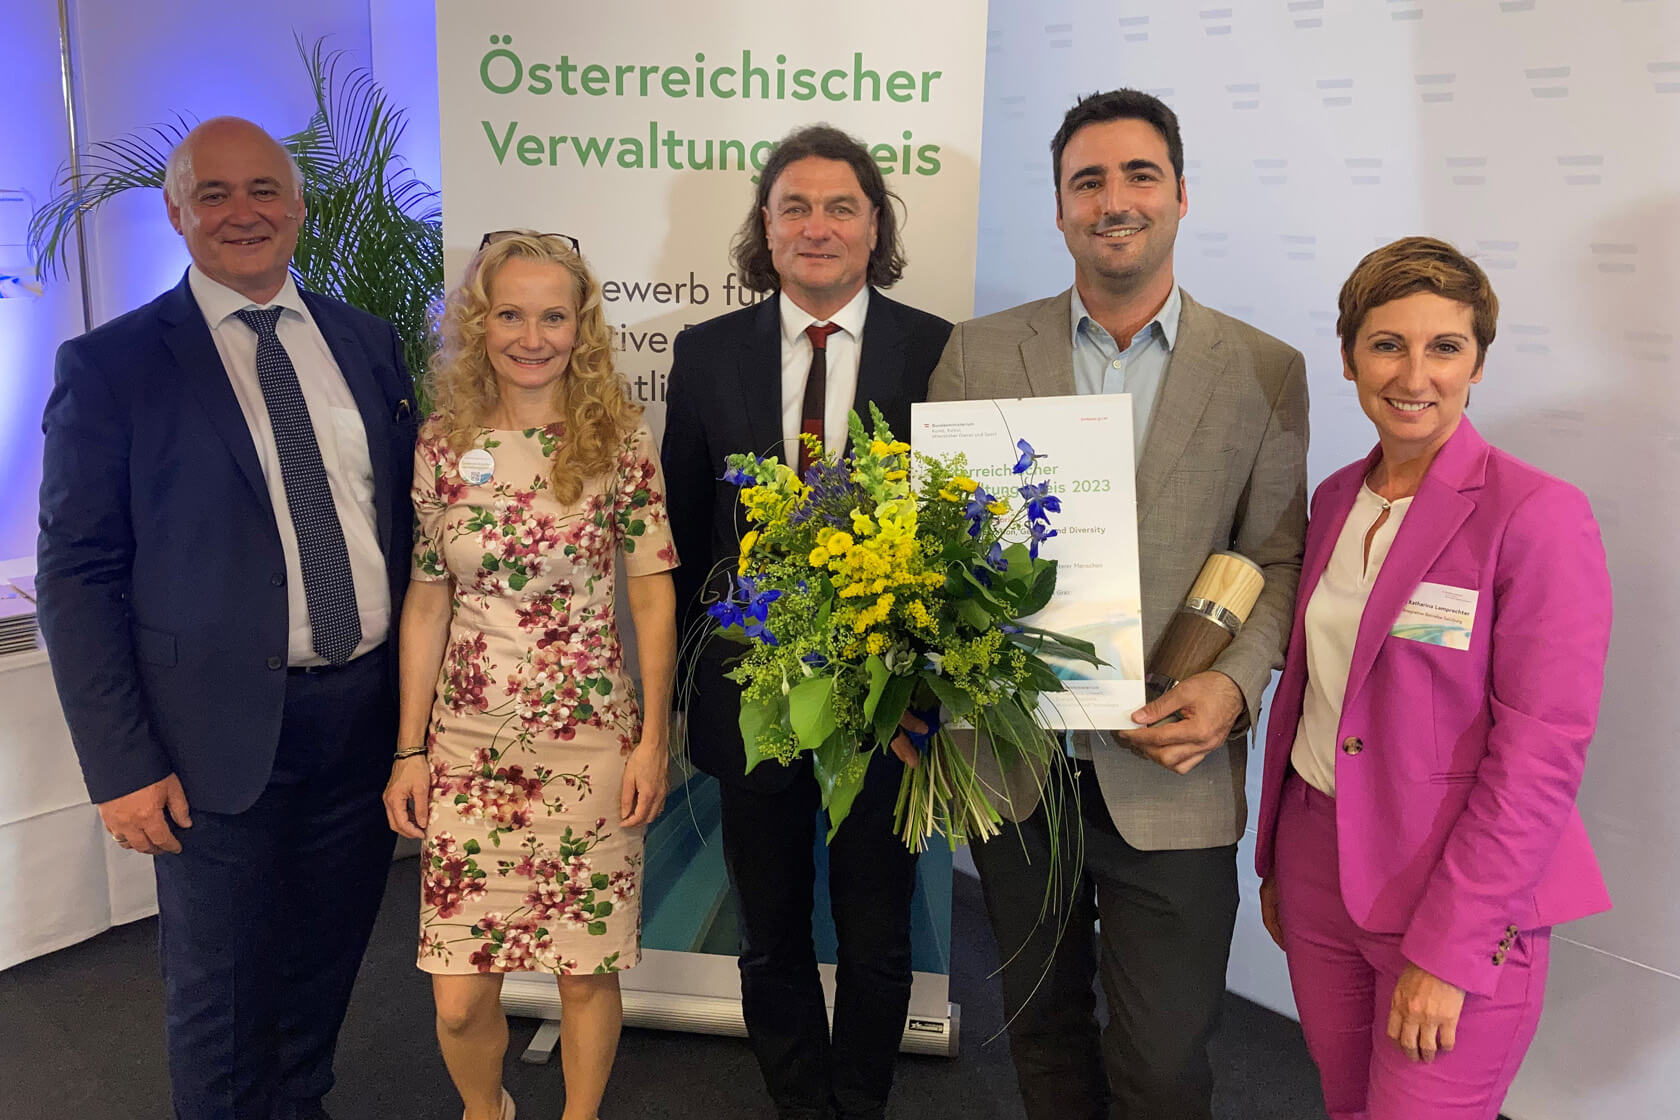 Fünf Menschen stehen lächelnd nebeneinander. Der Mann in der Mitte hält einen Blumenstrauß und ein Zertifikat in der Hand mit dem der Verwaltungspreis 2023 verliehen wurde.